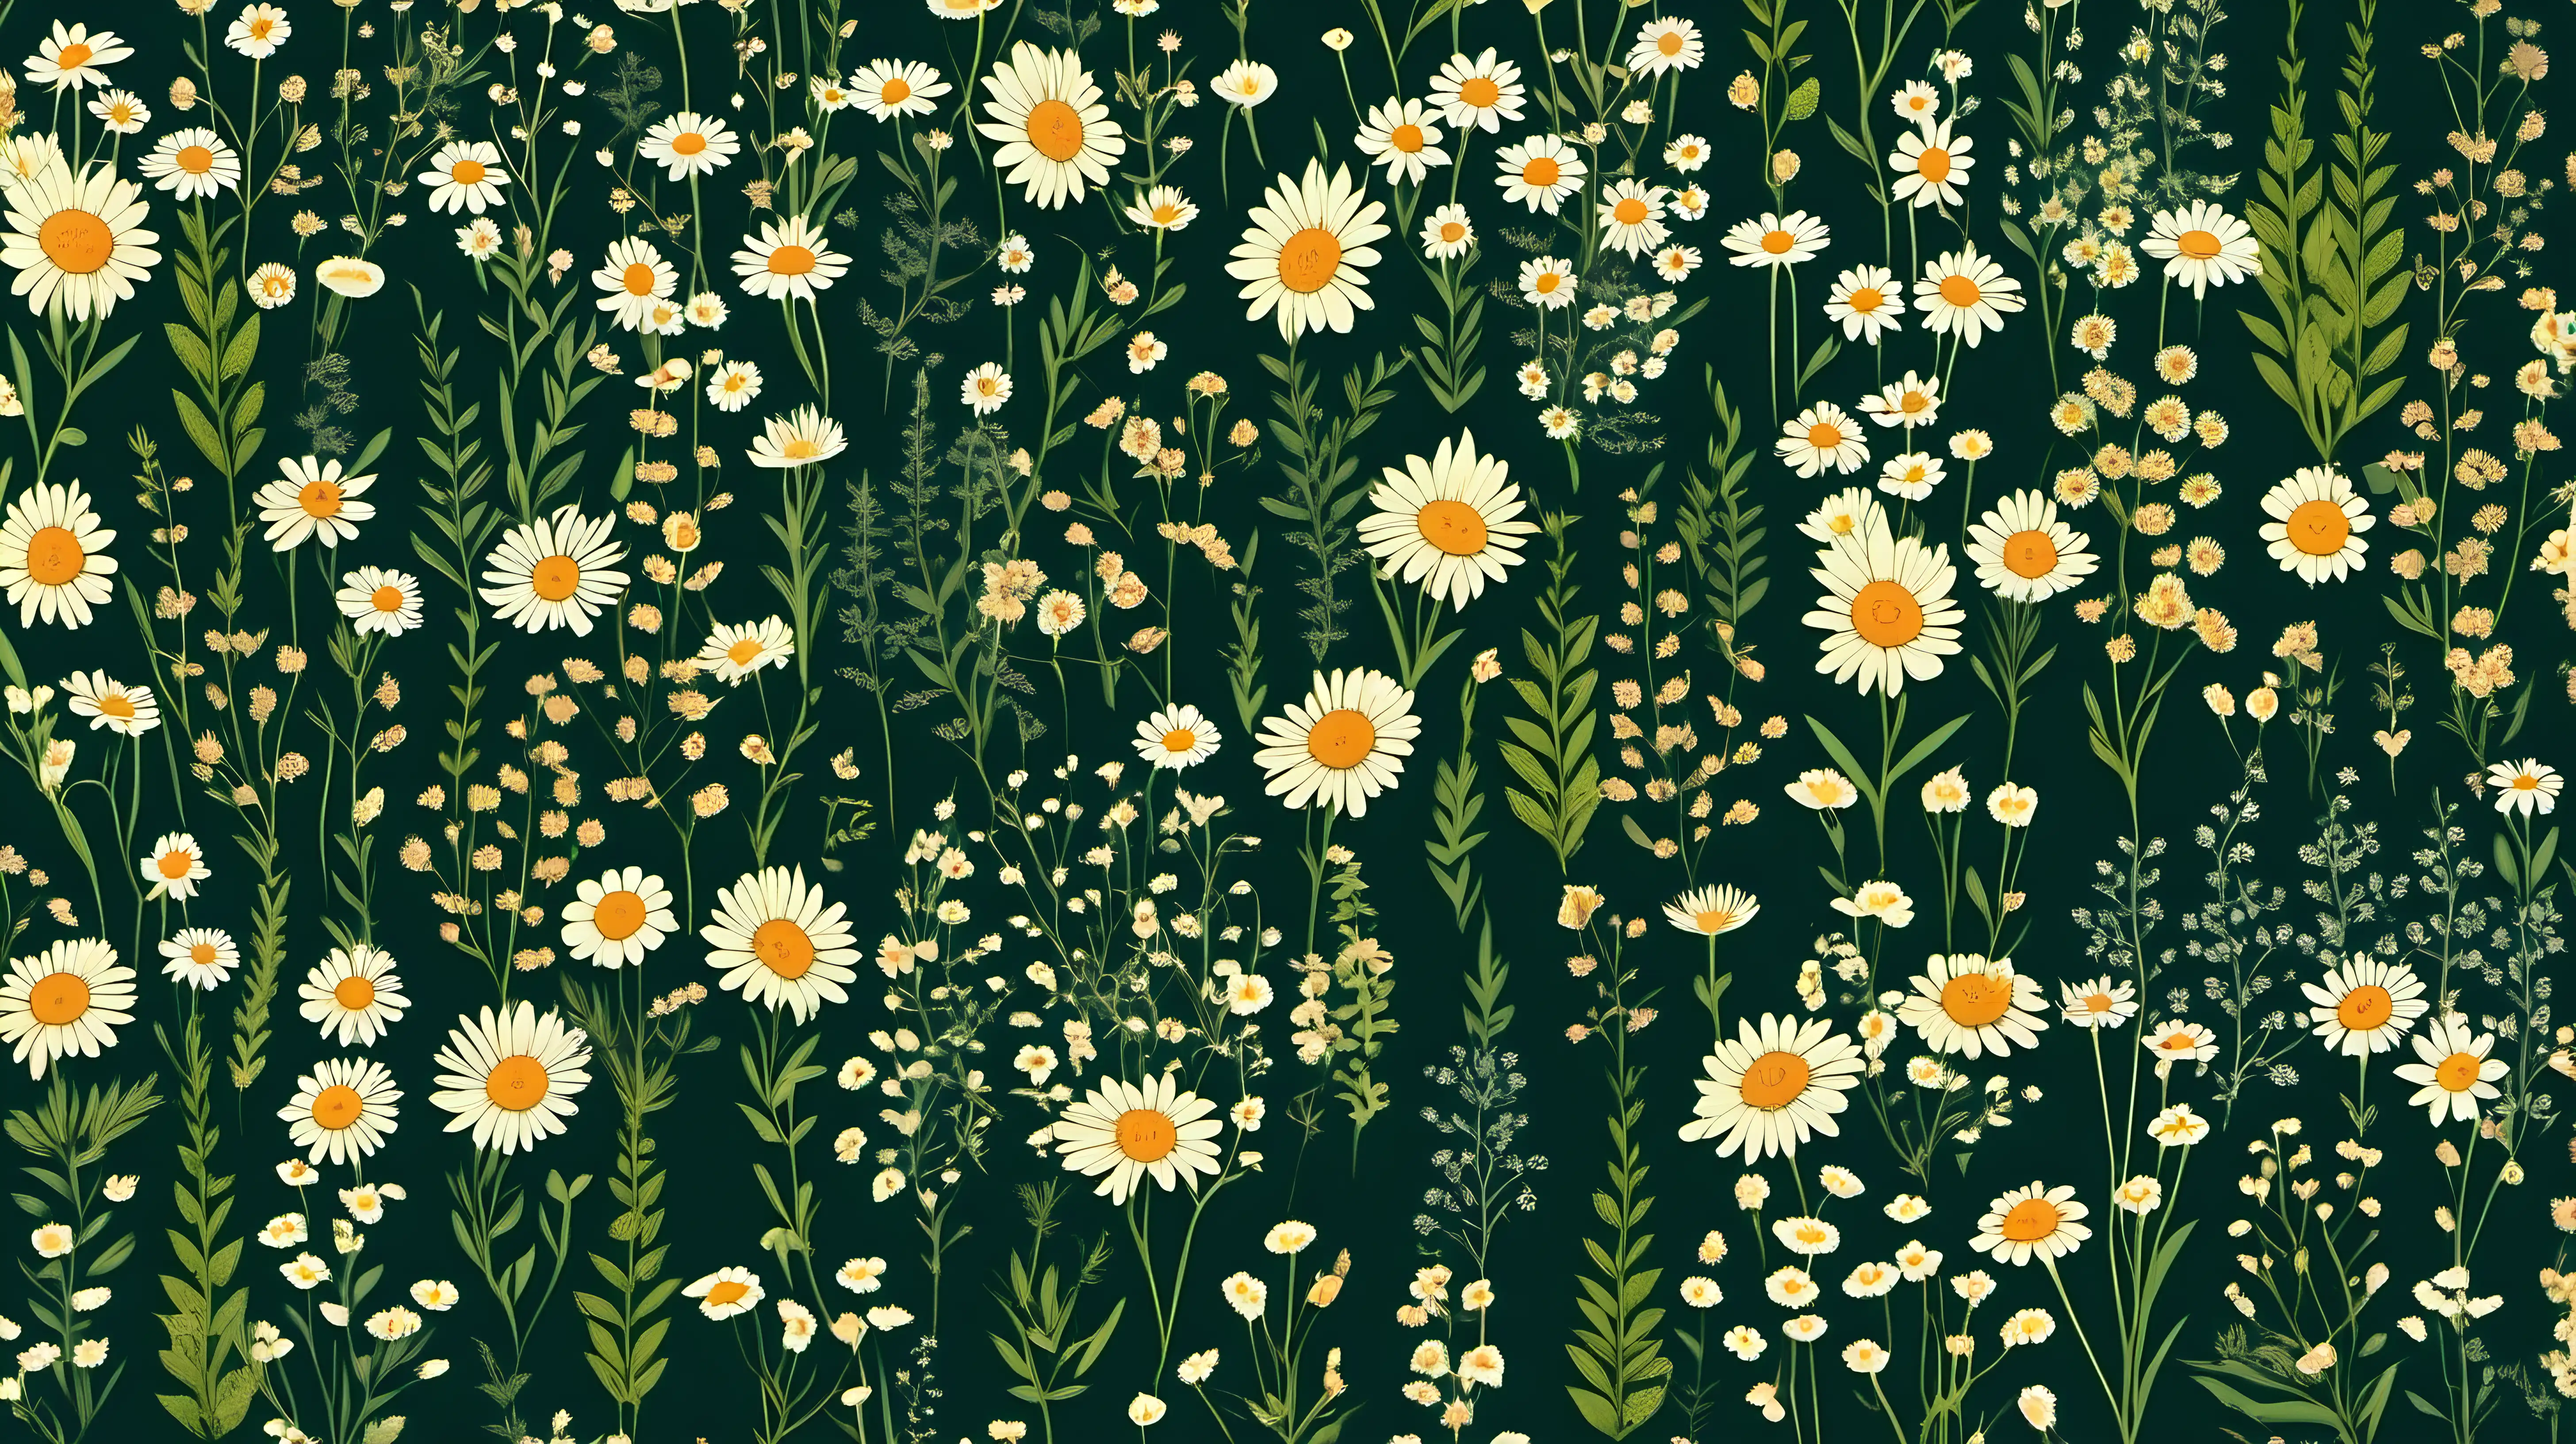 Vintage Botanical Garden Pattern with Small Wild Flowers on Dark Green Background